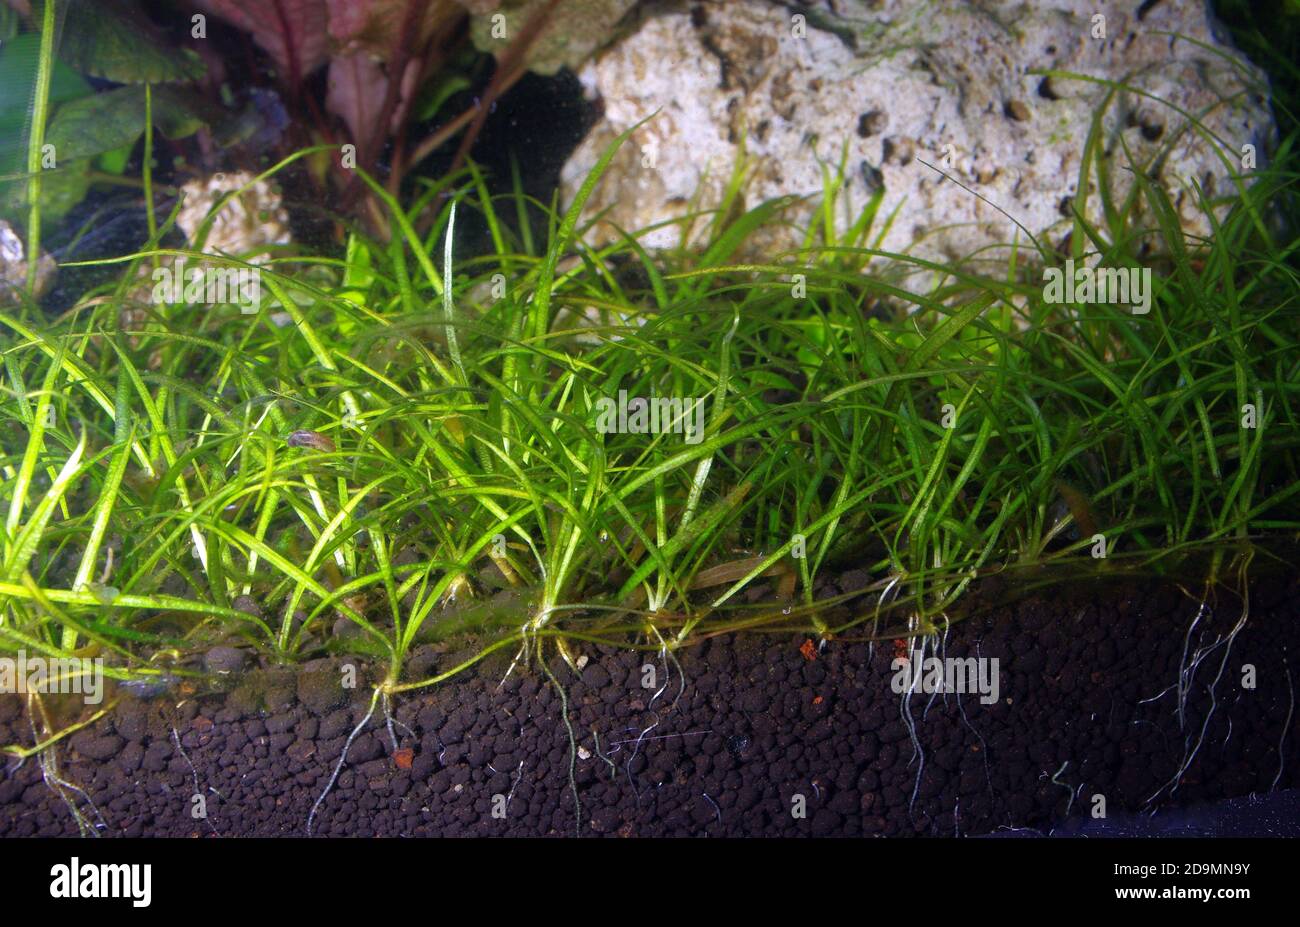 Detail of aquarium plant roots (Sagittaria sp.) Stock Photo